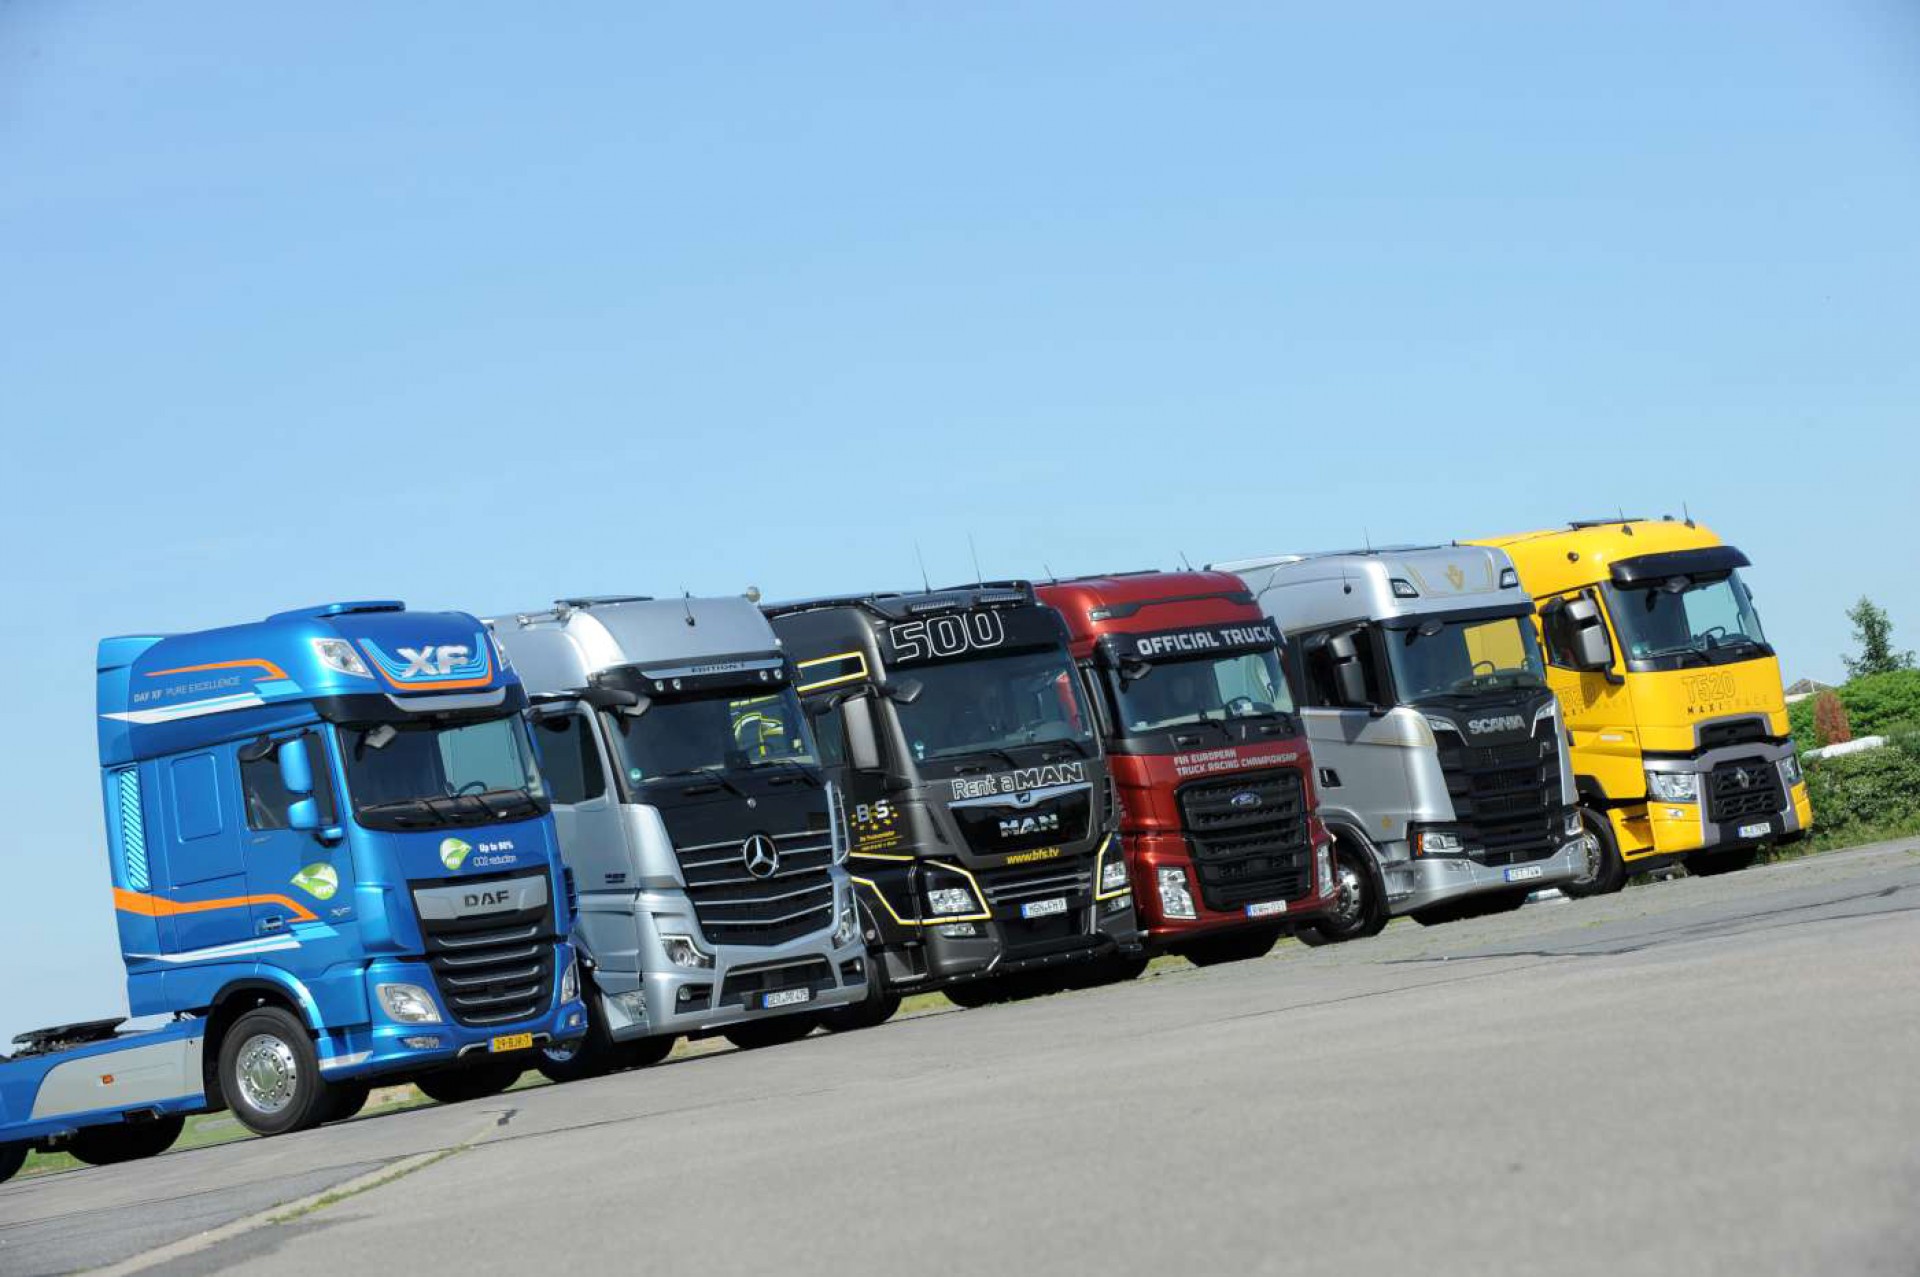 495 de camioane vândute în februarie. În primele două luni vânzările au ajuns la 890 vehicule